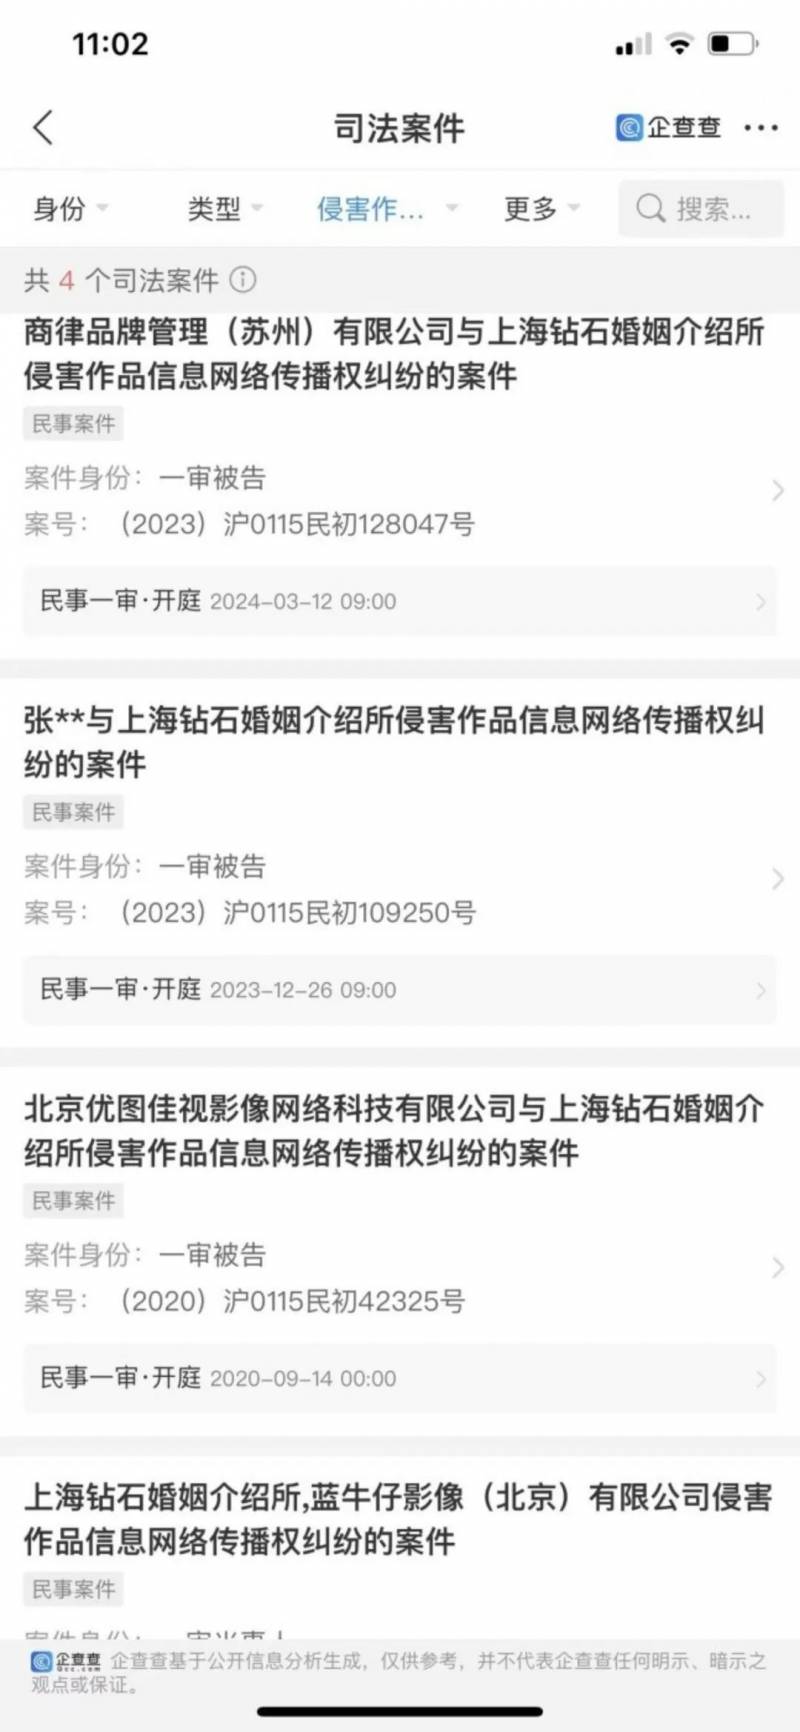 红芒果网的微博涉嫌发布不实信息，网友质疑其盗用名人照片做宣传，涉事平台此前已多次因违规操作被投诉。